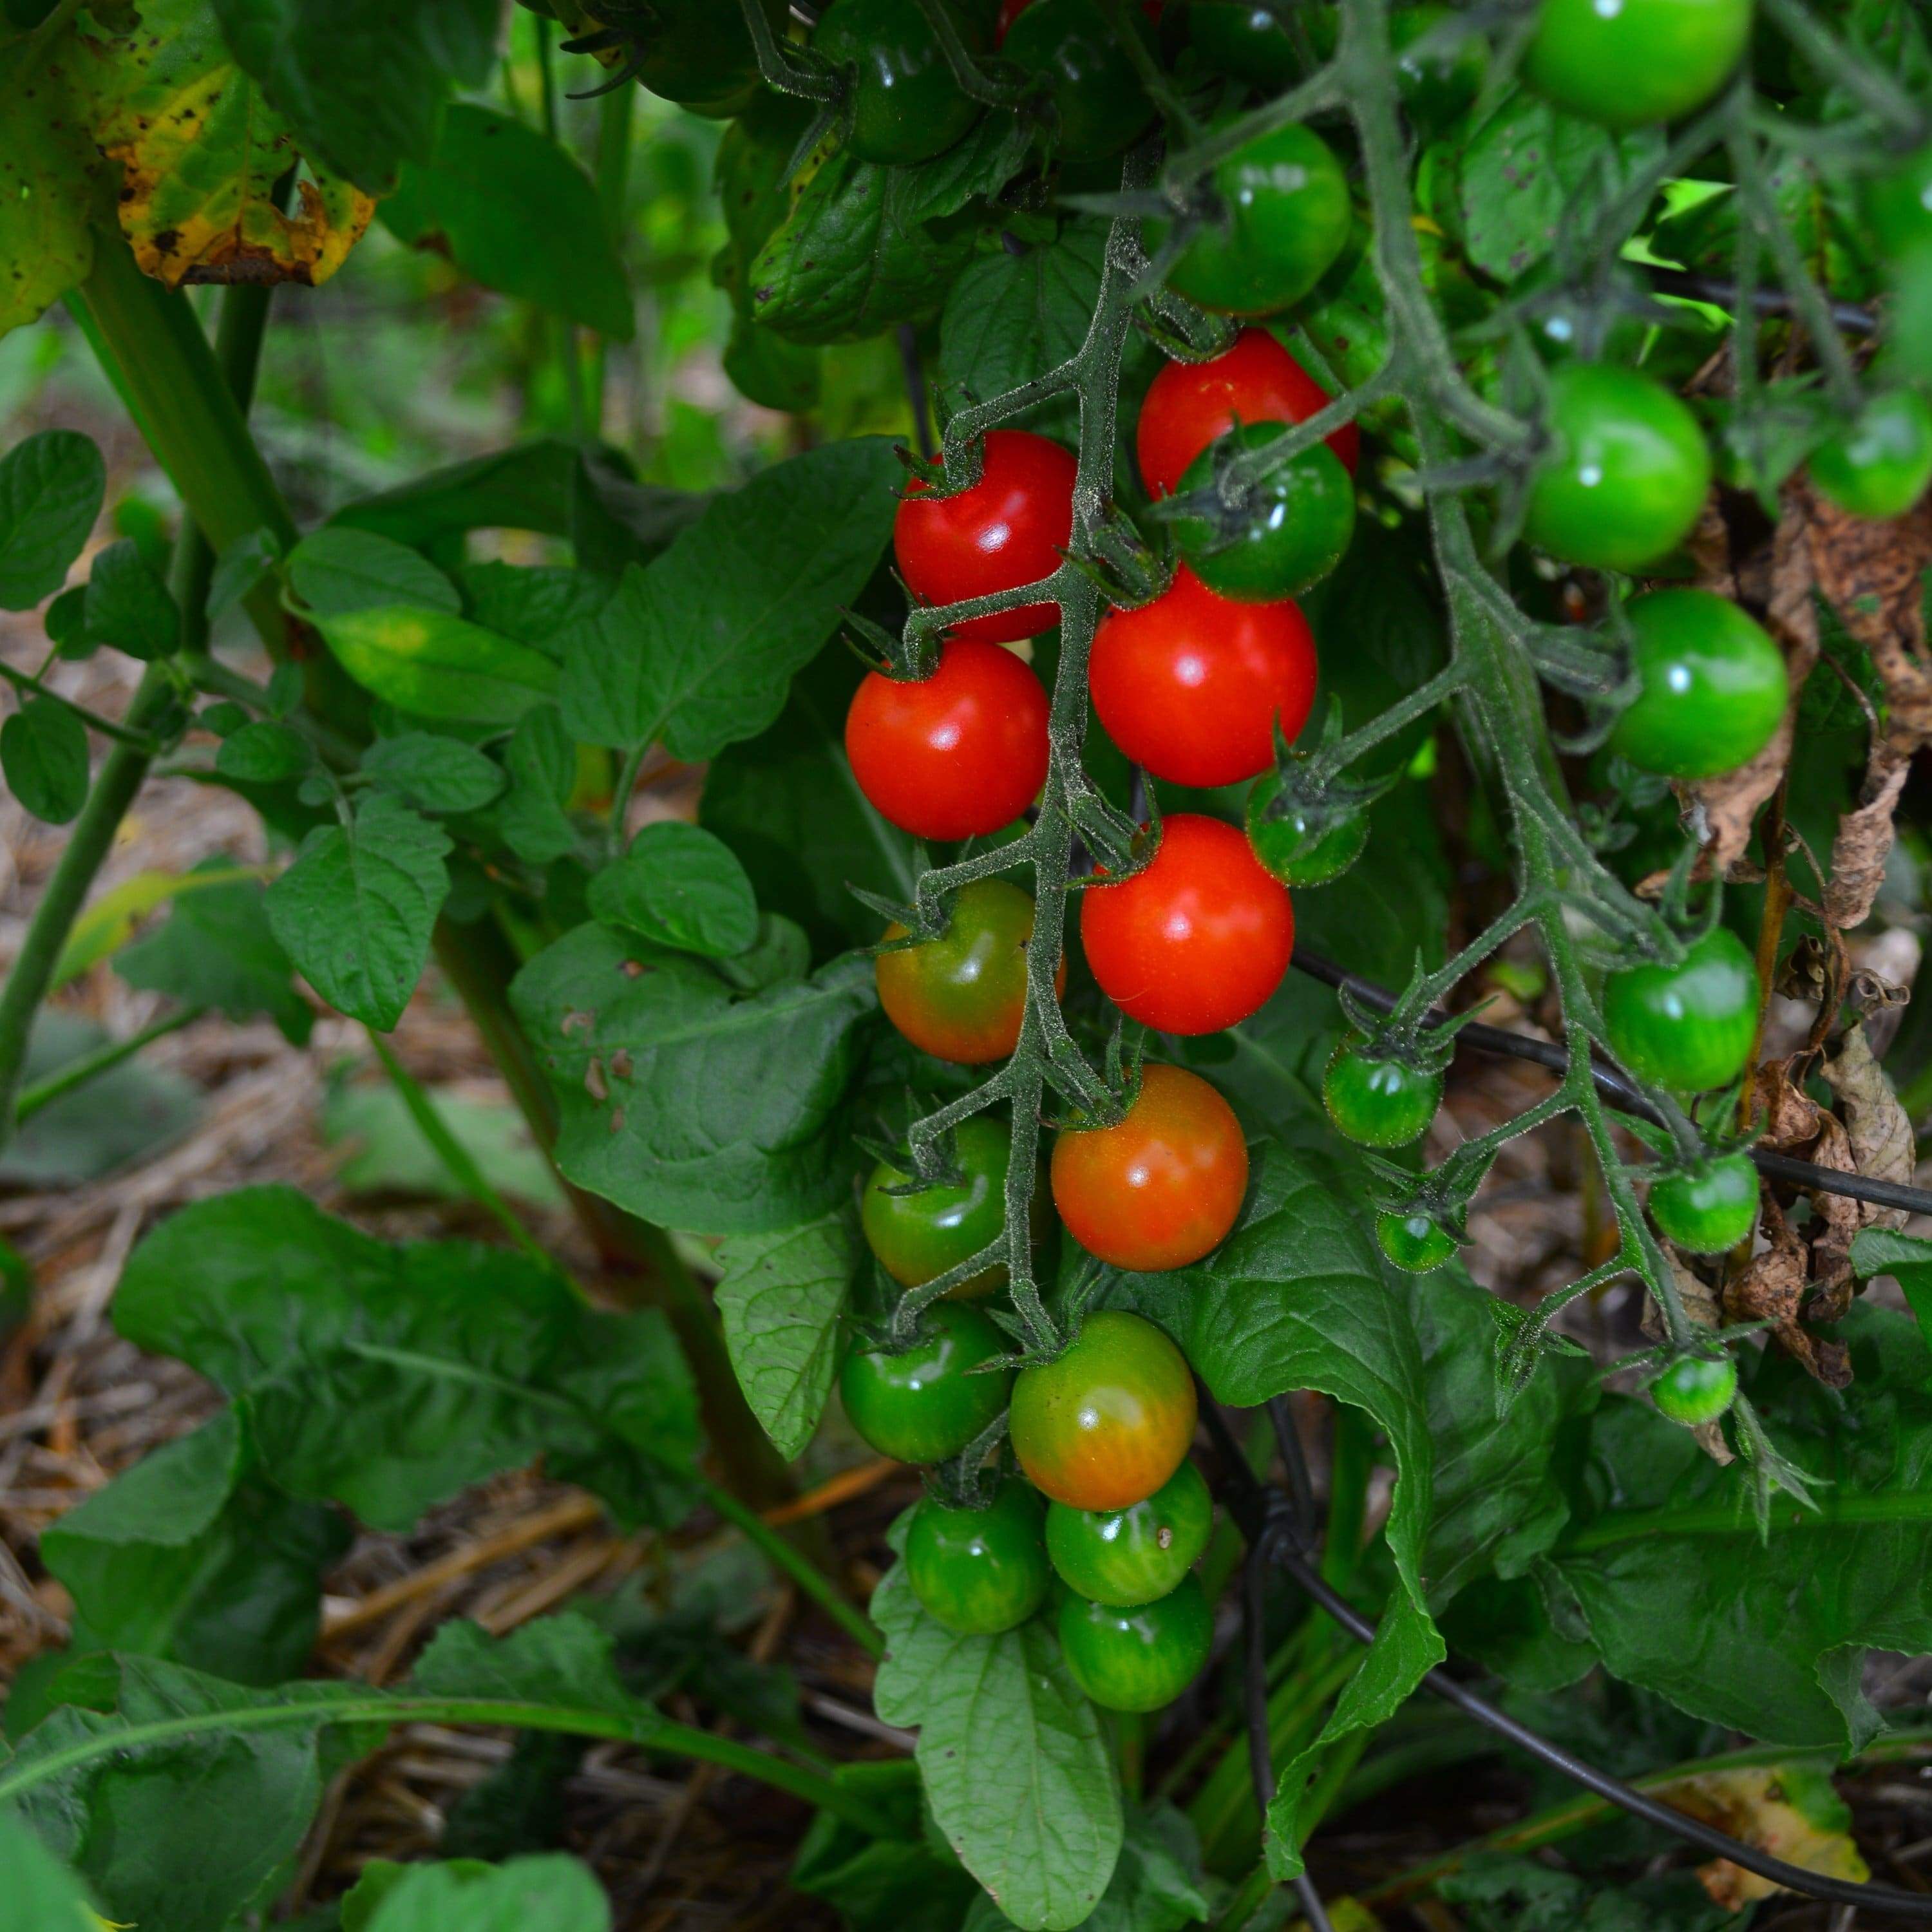 Sweetie cherry tomatoes in garden